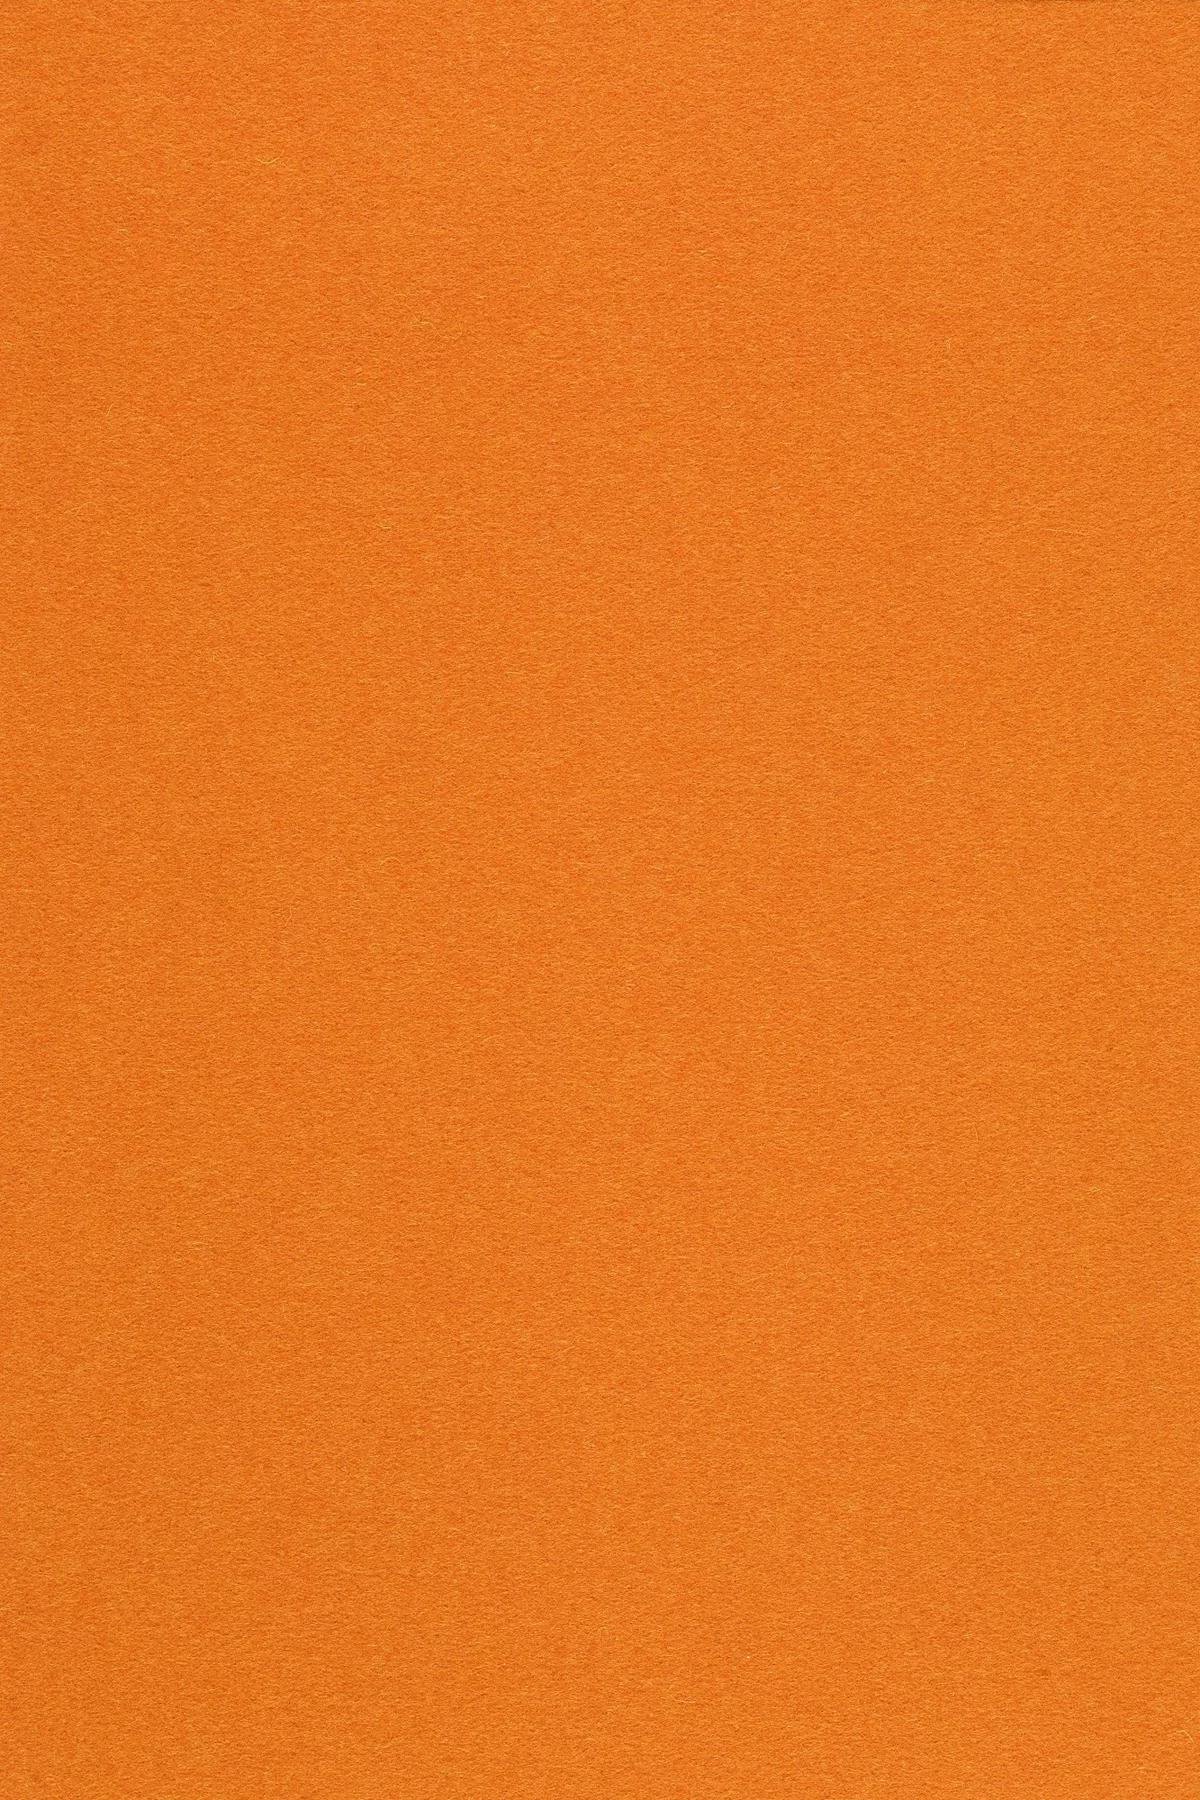 Fabric sample Divina 3 542 orange